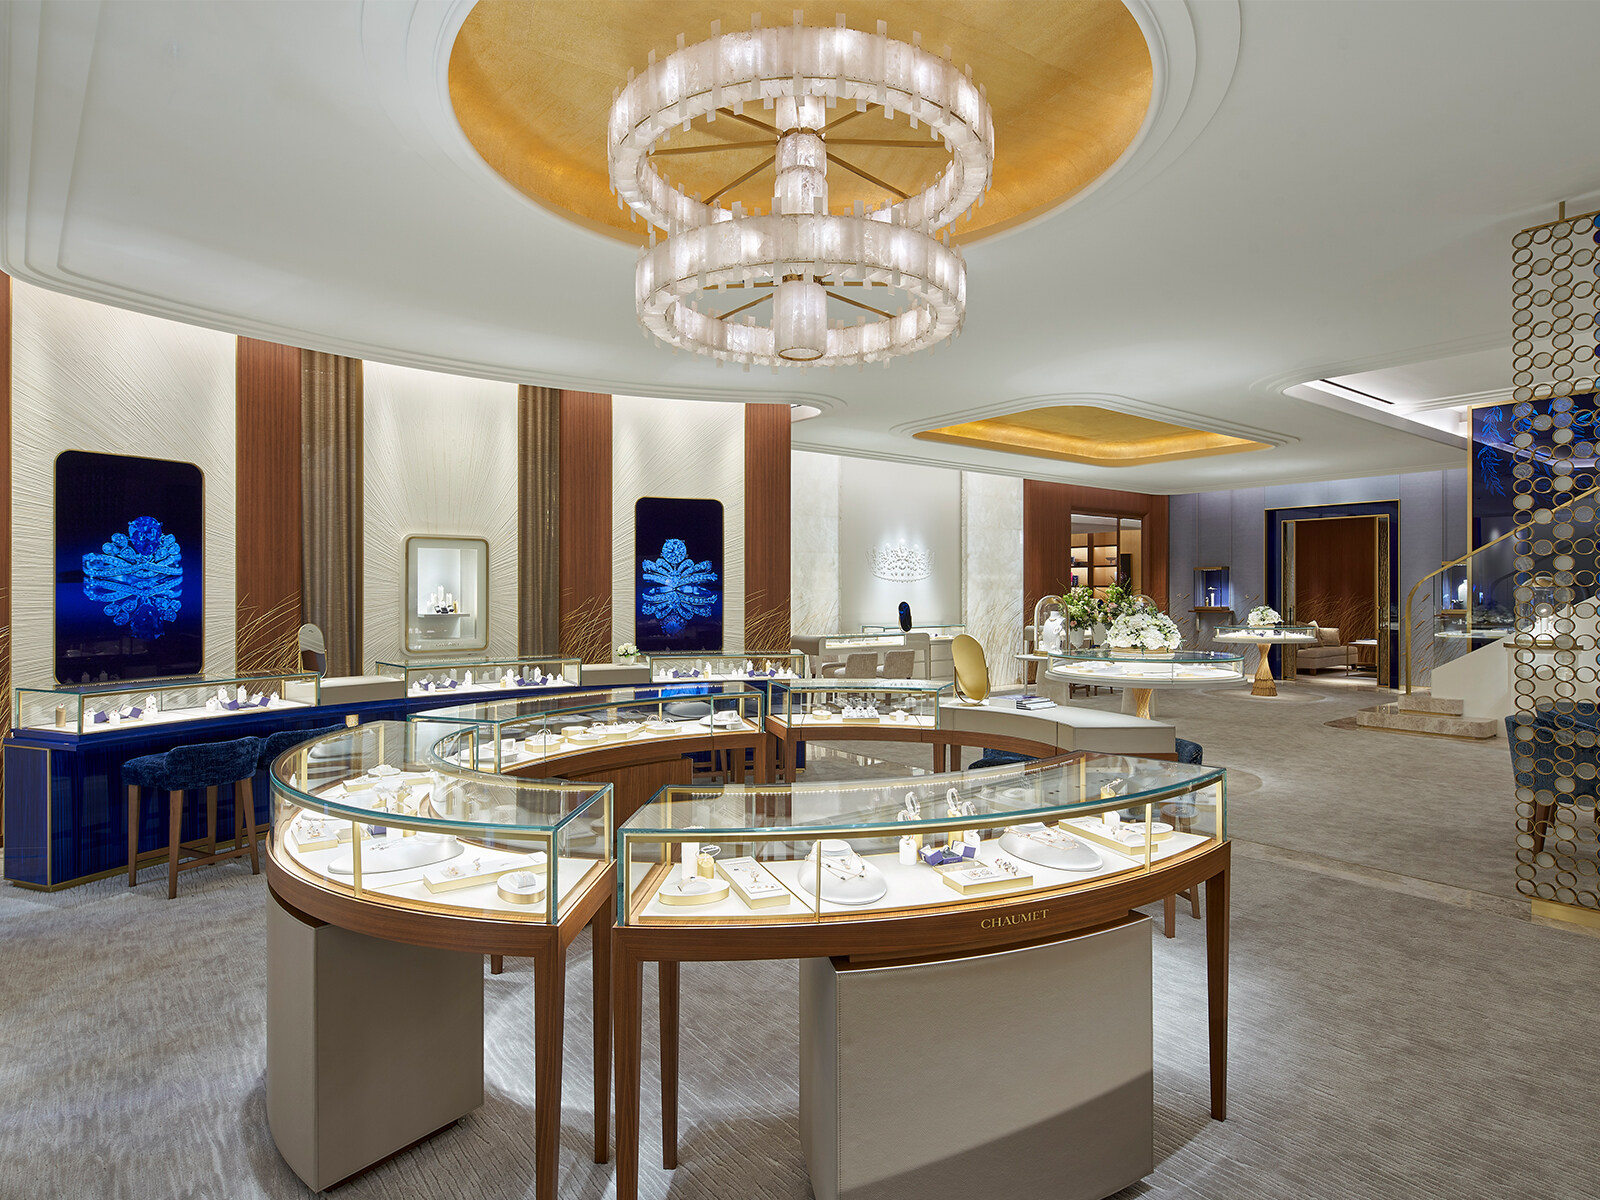 法國殿堂級珠寶品牌Chaumet最近於尖沙嘴地標1881開設全新旗艦店。